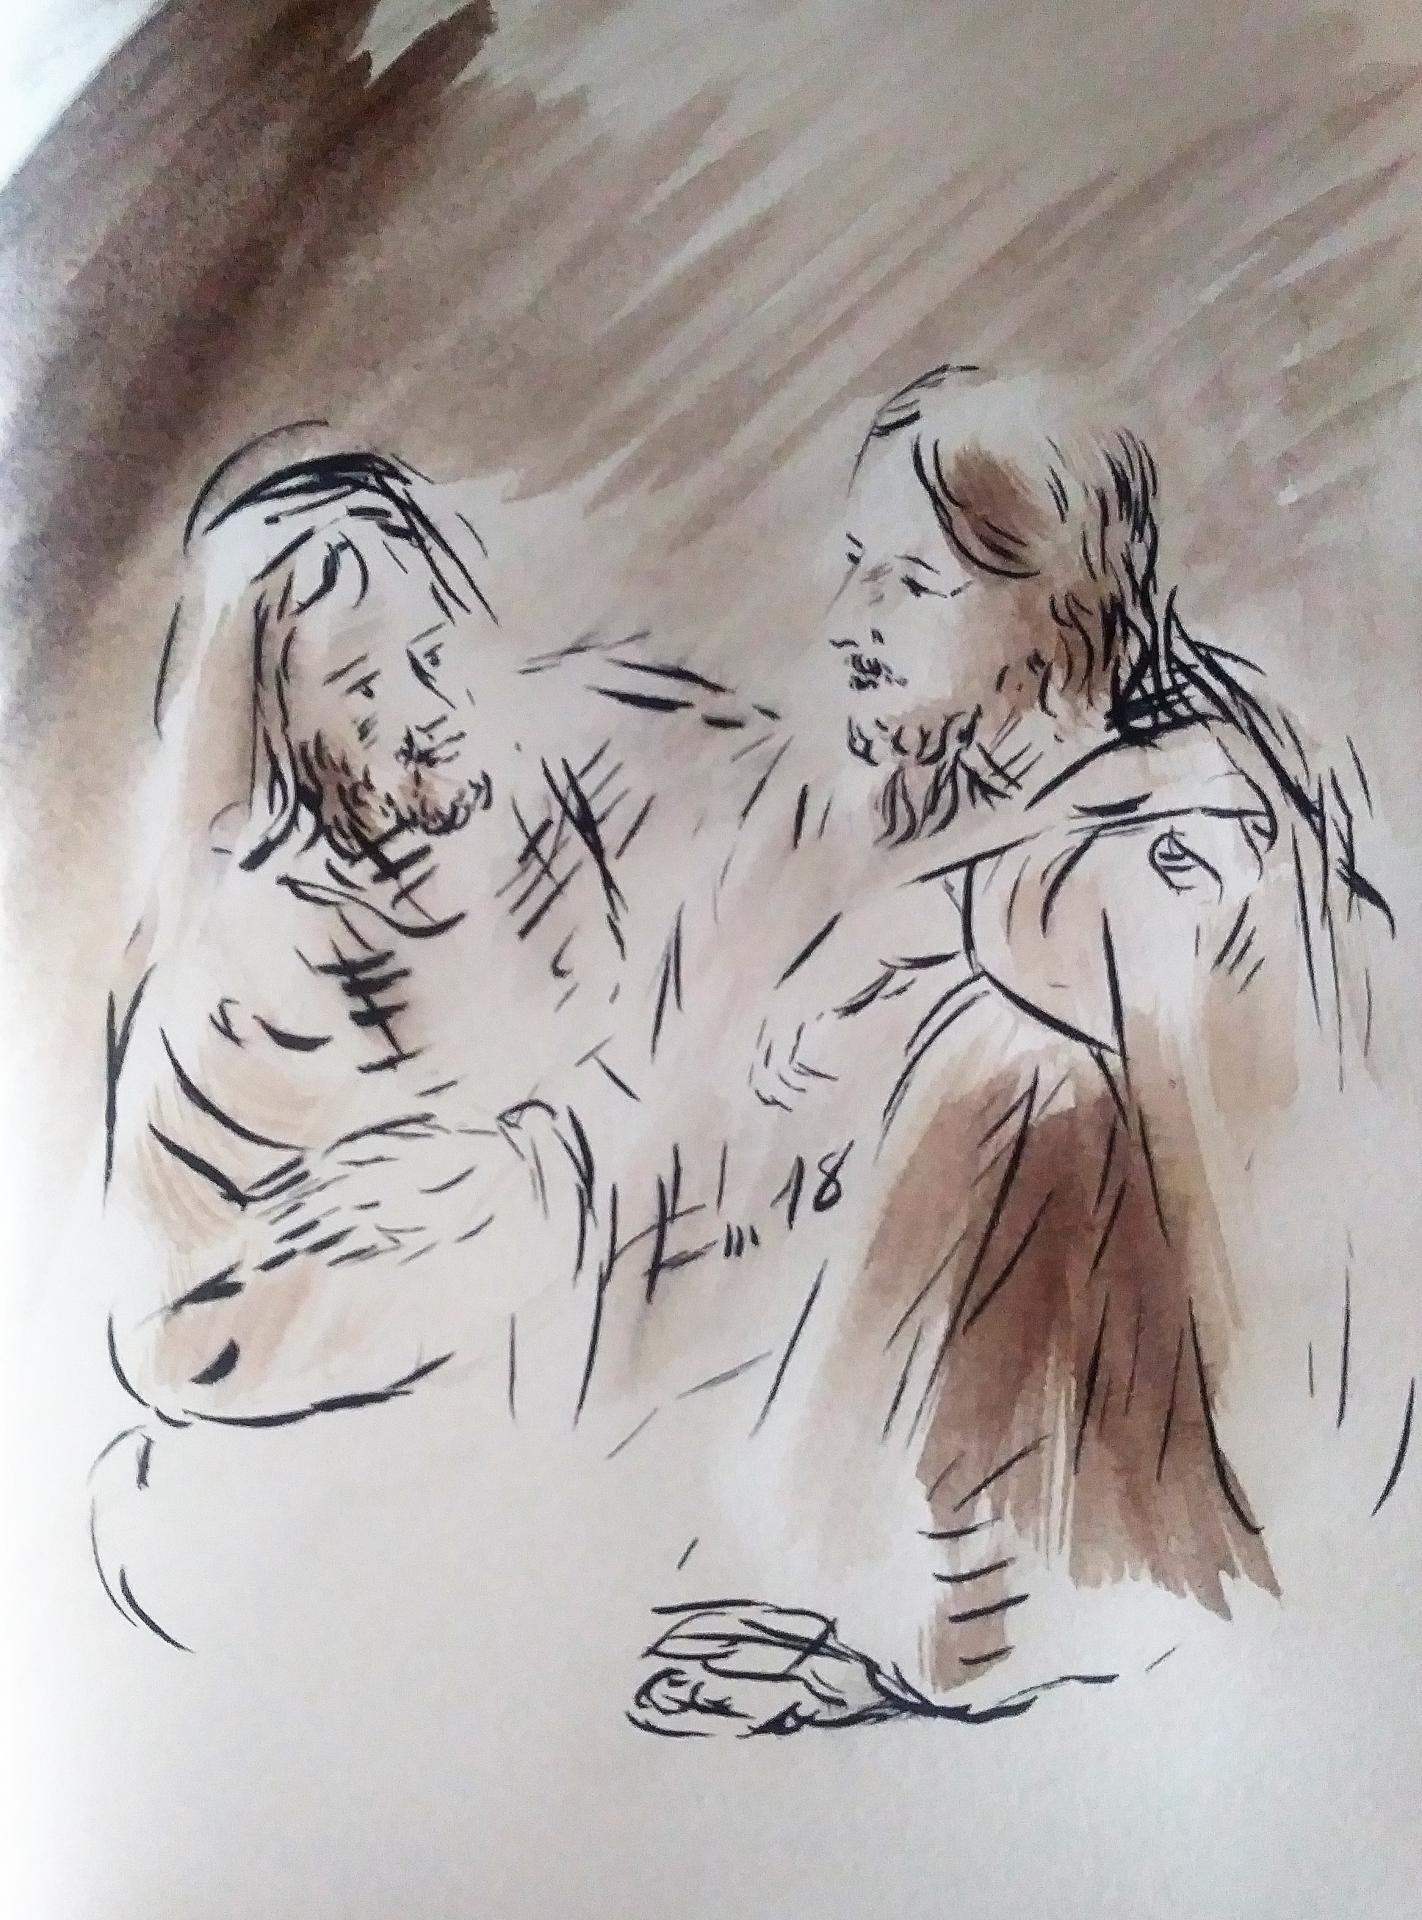 23 Mai 2018, évangile du jour illustré par un dessin au lavis